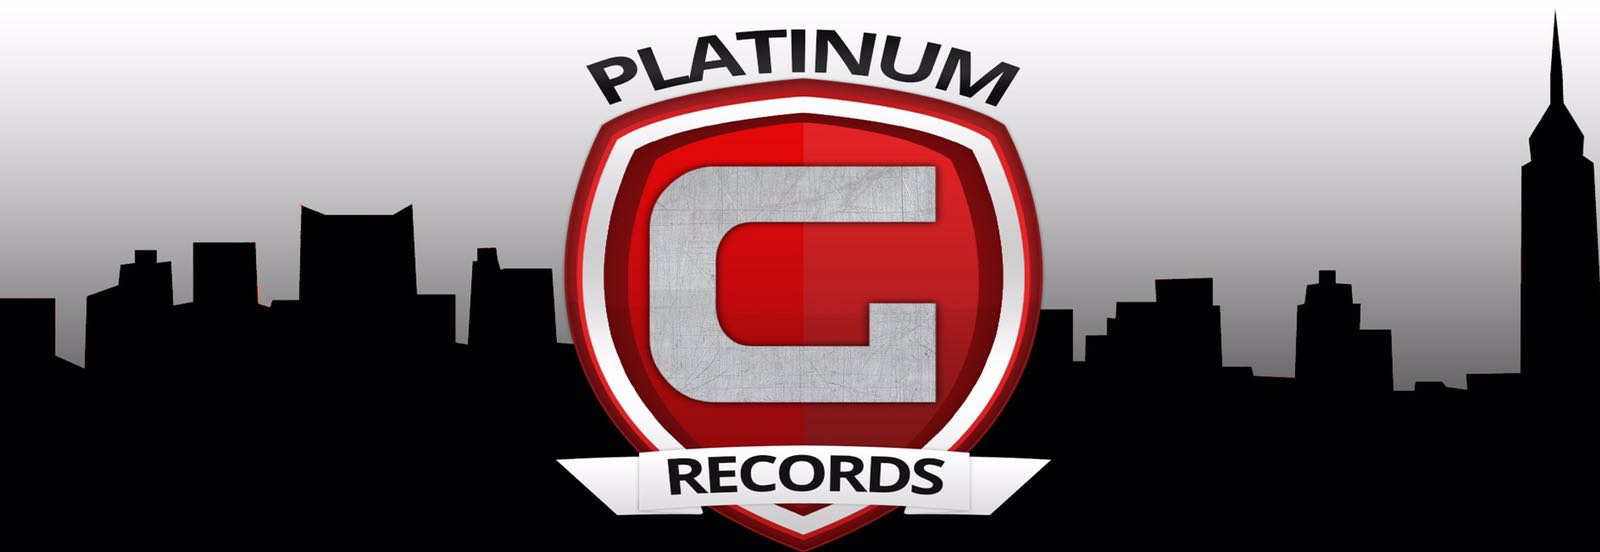 Platinum G Records